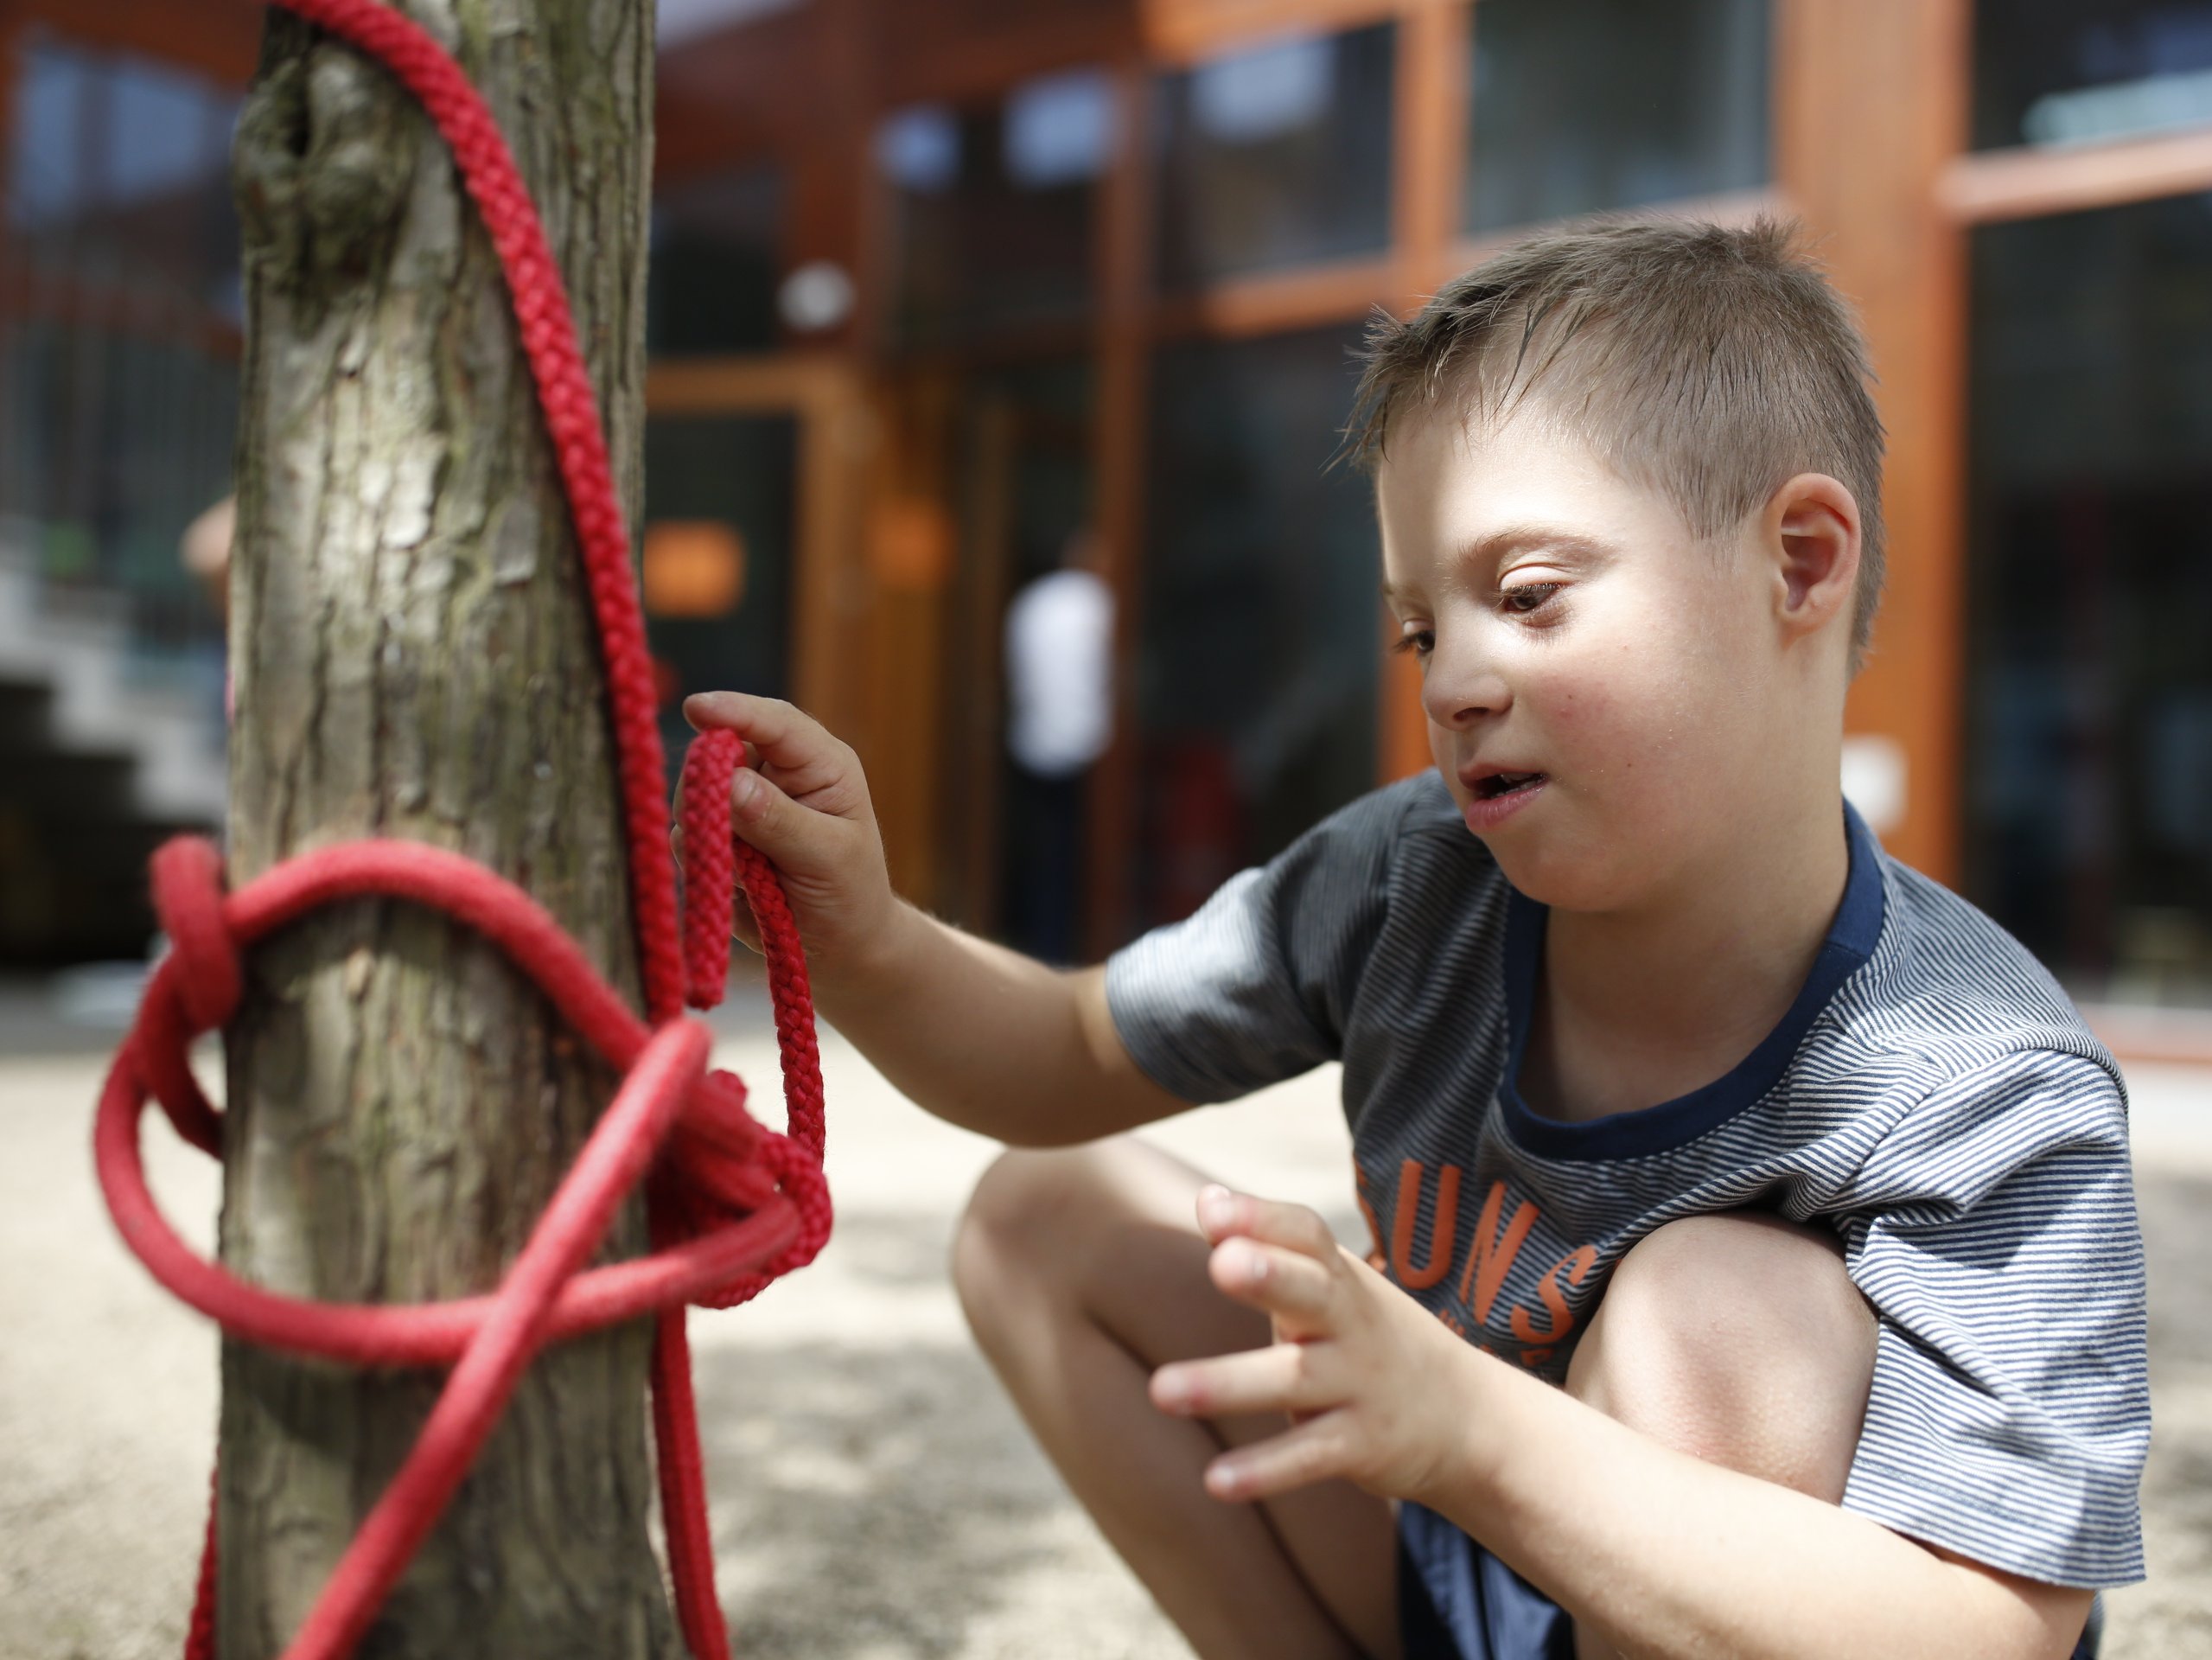 Foto von einem Jungen mit Down-Syndrom. Er spielt auf einem Spielplatz mit einem Seil.